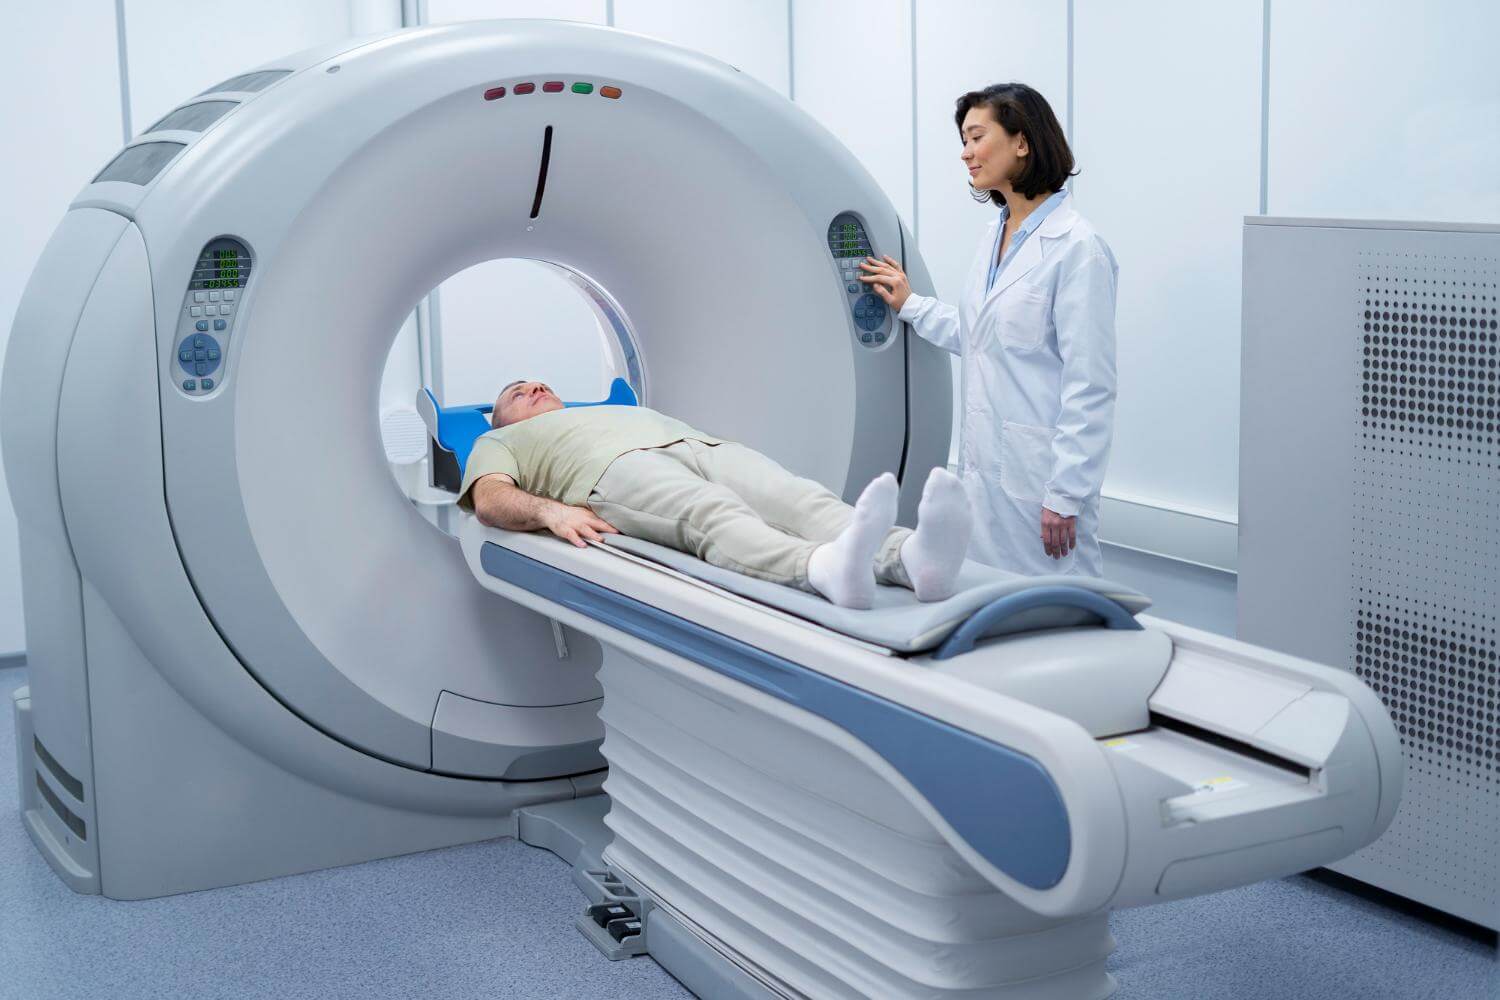 Homem deitado em equipamento de tomografia com a médica ao lado.